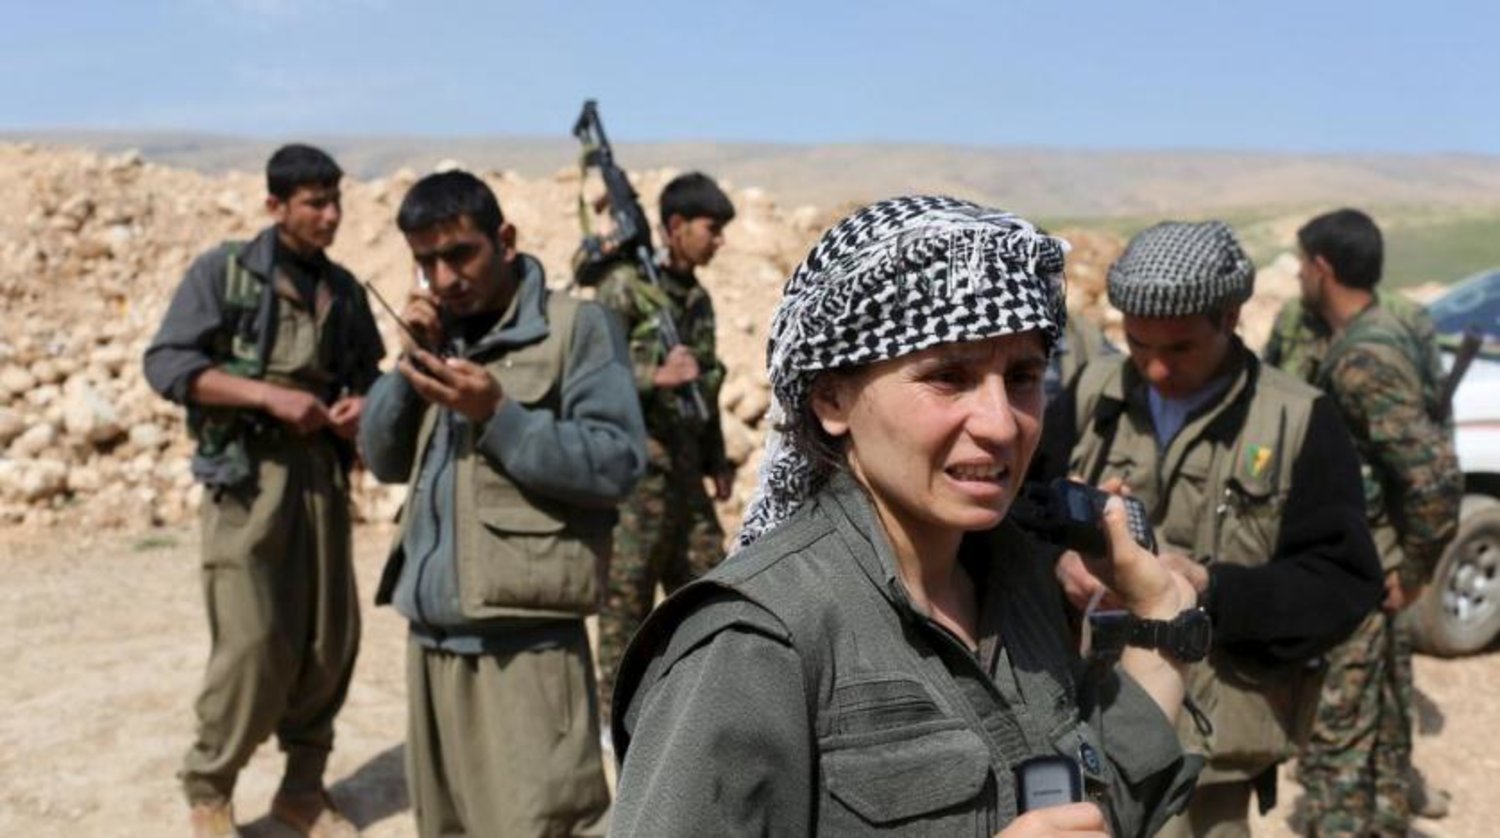 Kurdistan Workers Party (PKK) fighters are pictured in Sinjar, northwest Iraq